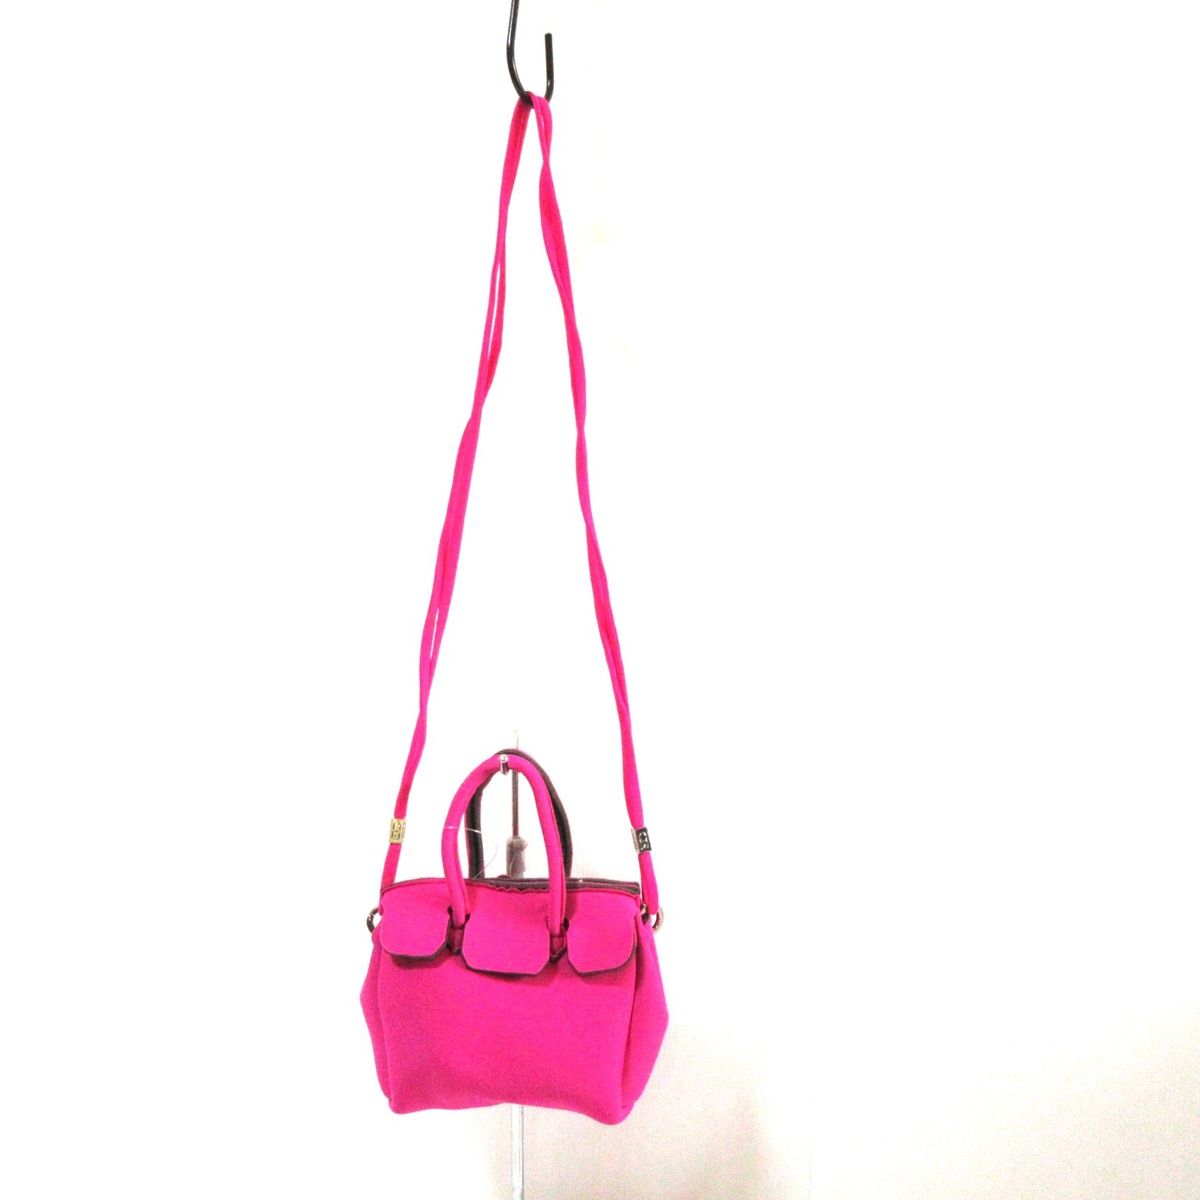 SAVE MY BAG(セーブマイバッグ) トートバッグ - ピンク ミニバッグ ポリエーテル×ポリアミド×エラスタン